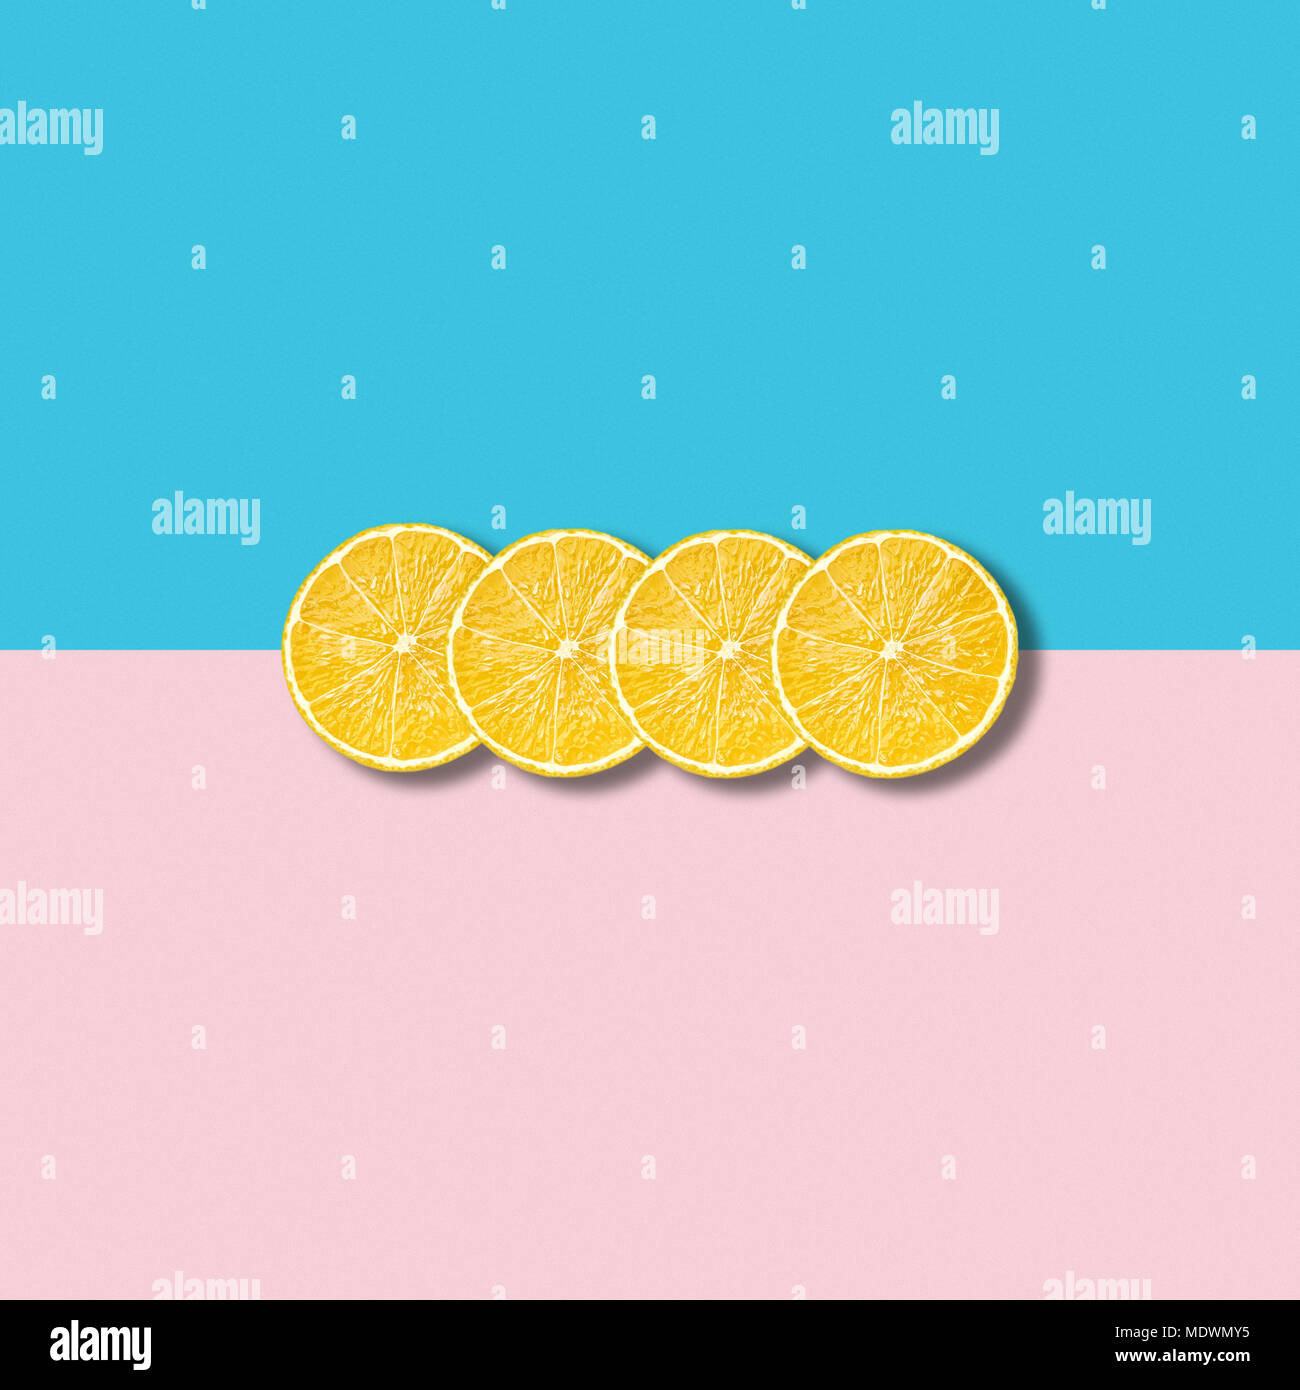 Un minimum d'abstract illustration avec groupe de tranches de citron sur fond turquoise et rose pastel Banque D'Images